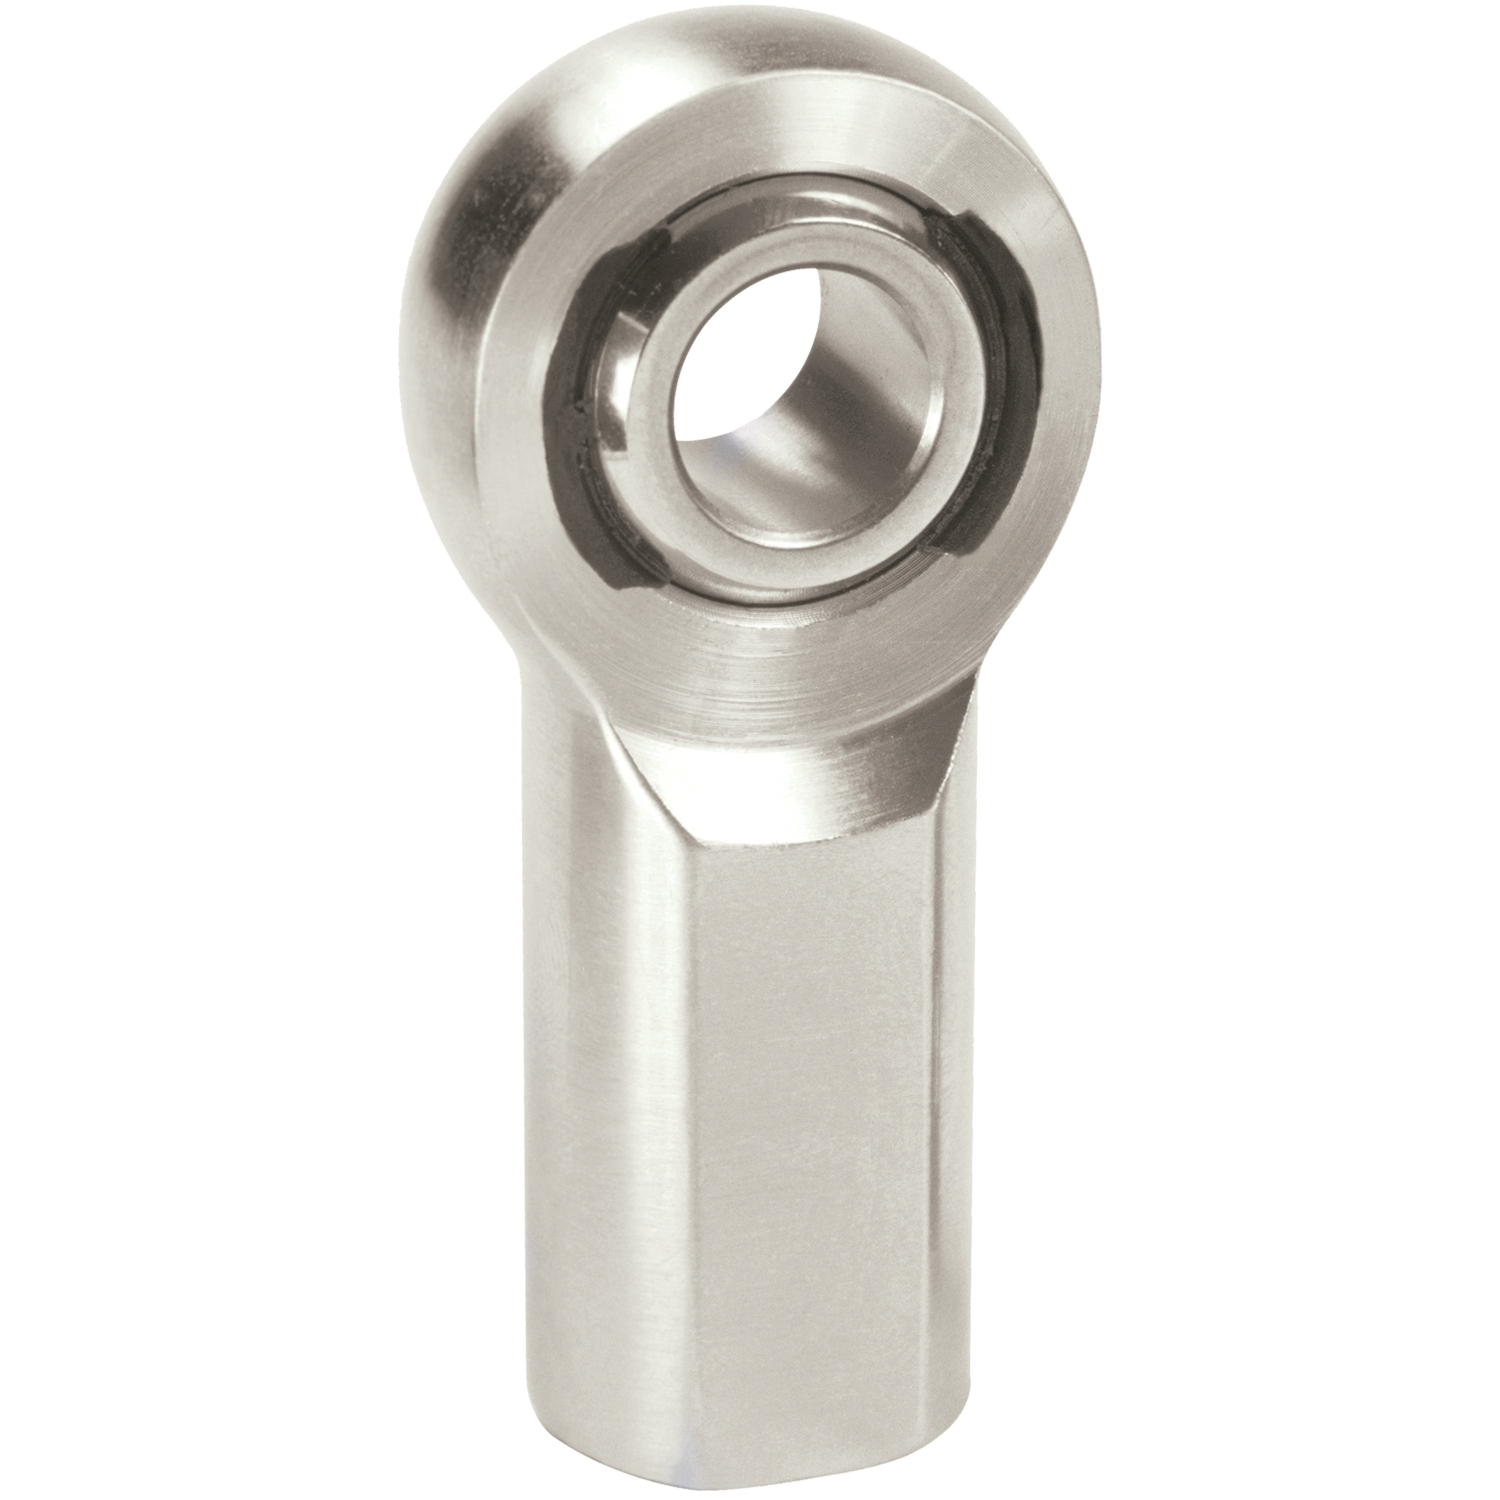 XF Chromoly Steel Series Rod End Hole I.D.: .4375"